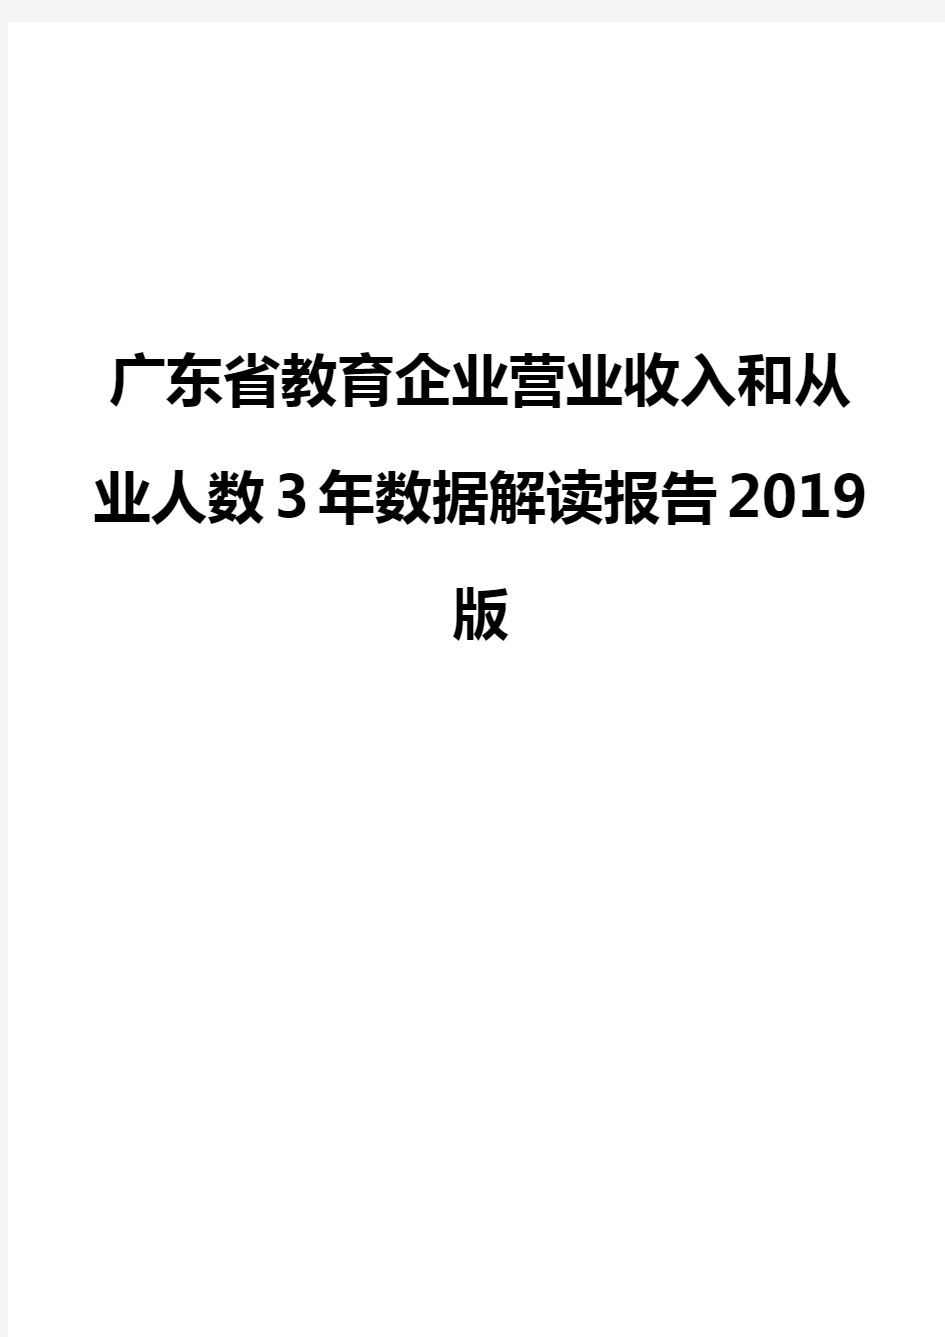 广东省教育企业营业收入和从业人数3年数据解读报告2019版